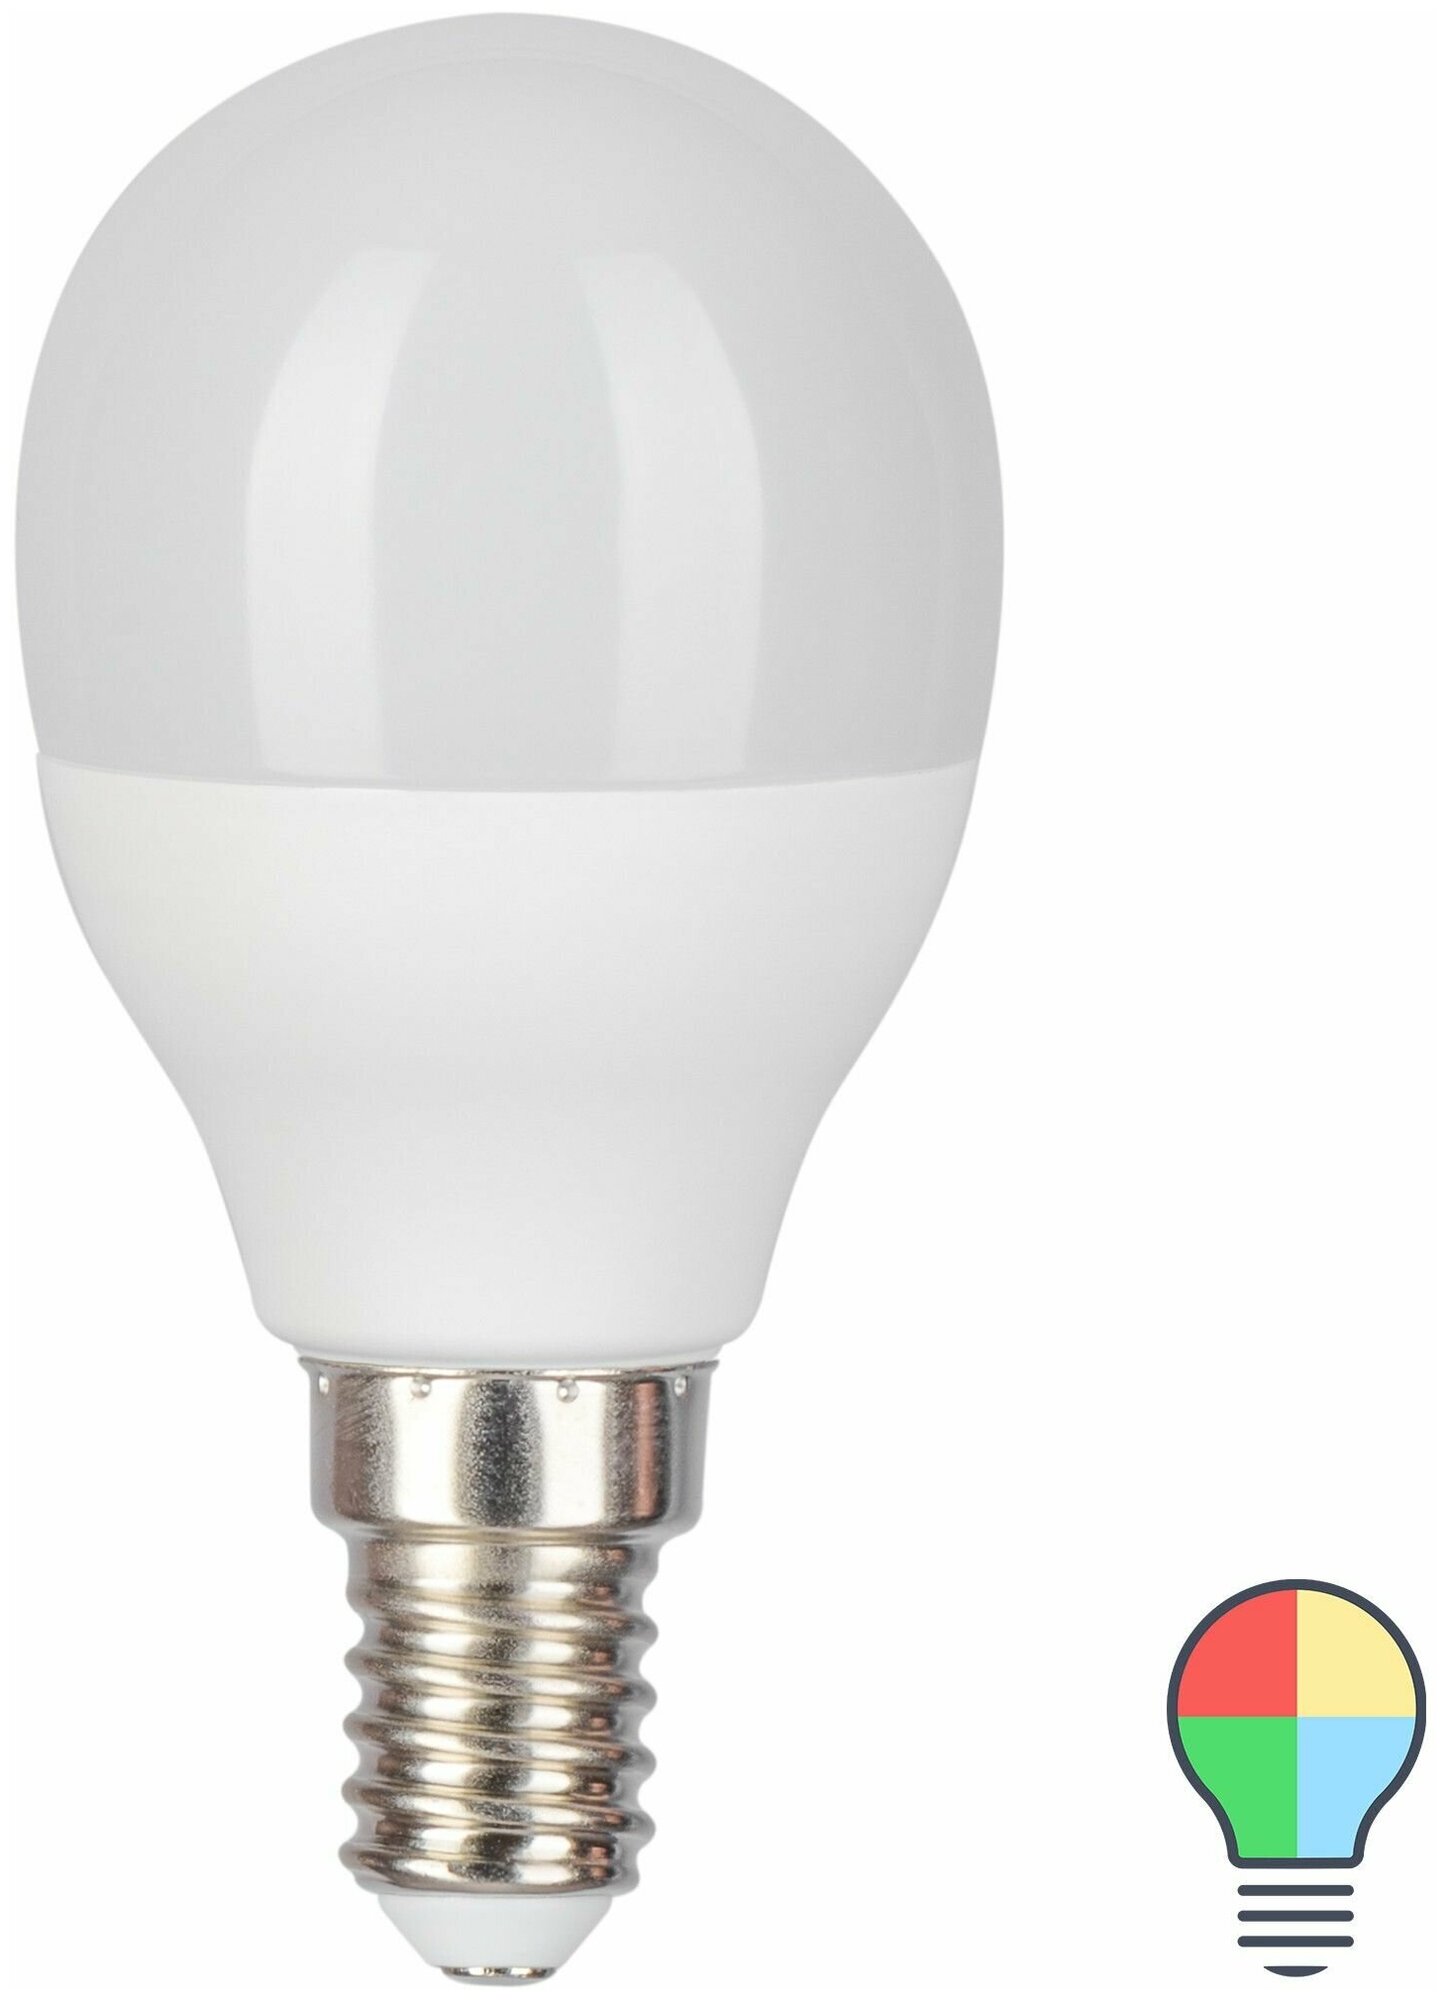 Лампа светодиодная Gauss E14 220-240 В 6 Вт шар матовый 440 лм регулируемый цвет света RGBW